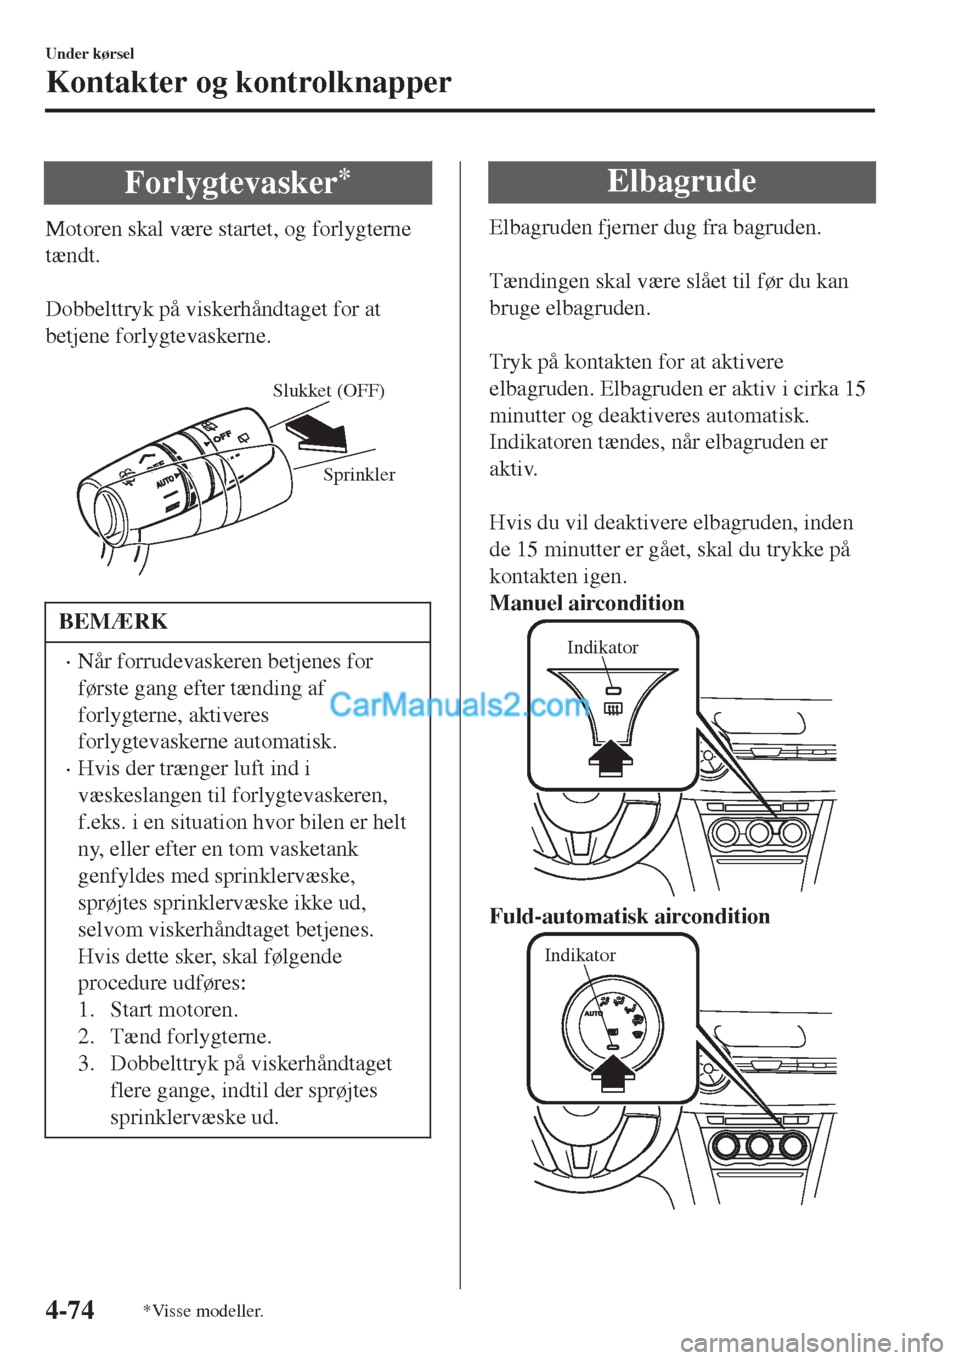 MAZDA MODEL 2 2017  Instruktionsbog (in Danish) Forlygtevasker*
Motoren skal være startet, og forlygterne
tændt.
 
Dobbelttryk på viskerhåndtaget for at
betjene forlygtevaskerne.
 
Sprinkler Slukket (OFF)
BEMÆRK
•Når forrudevaskeren betjene